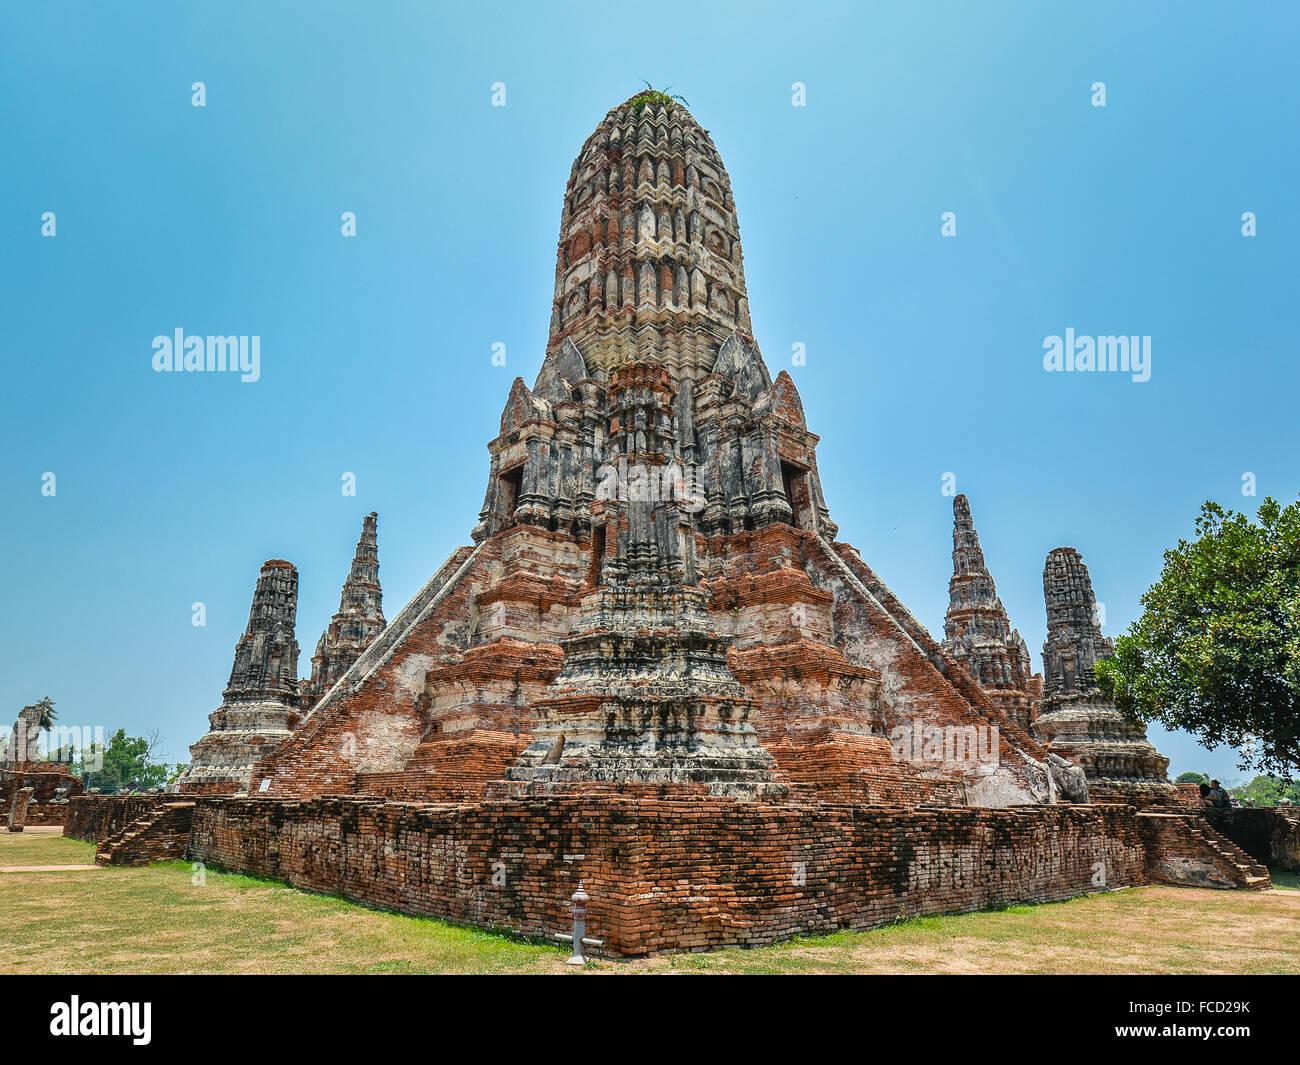 Wat Chaiwatthanaram - Ayutthaya, Thailand Stock Photo